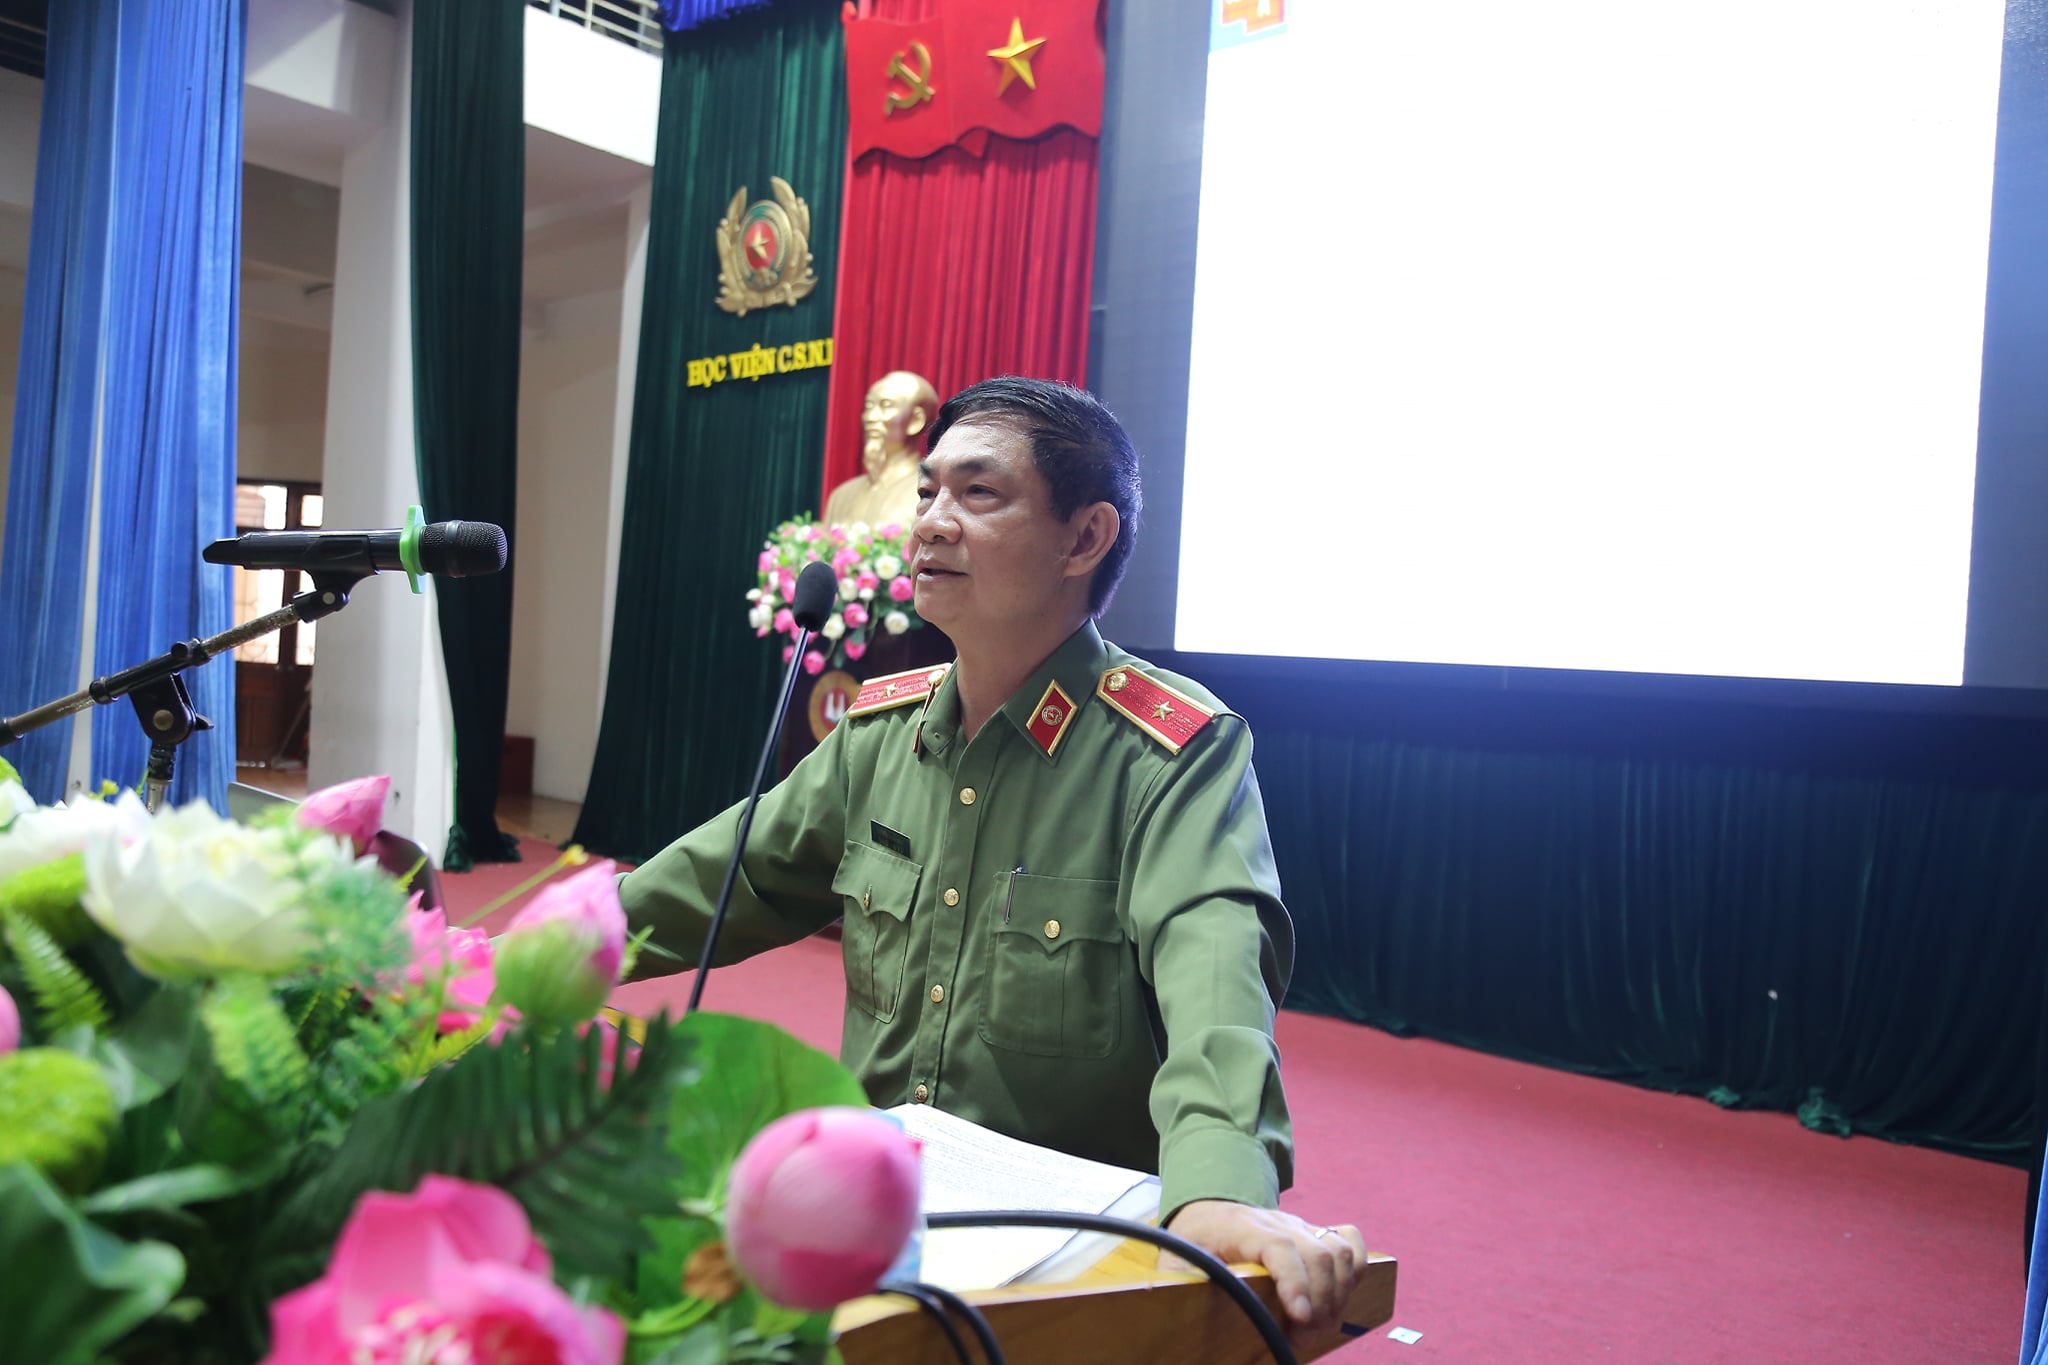 Thiếu tướng Nguyễn Xuân Ngư, nguyên Ủy viên Đảng ủy, nguyên Thủ trưởng Cơ quan kiểm tra Đảng ủy Công an Trung ương giảng bài cho lớp bồi dưỡng